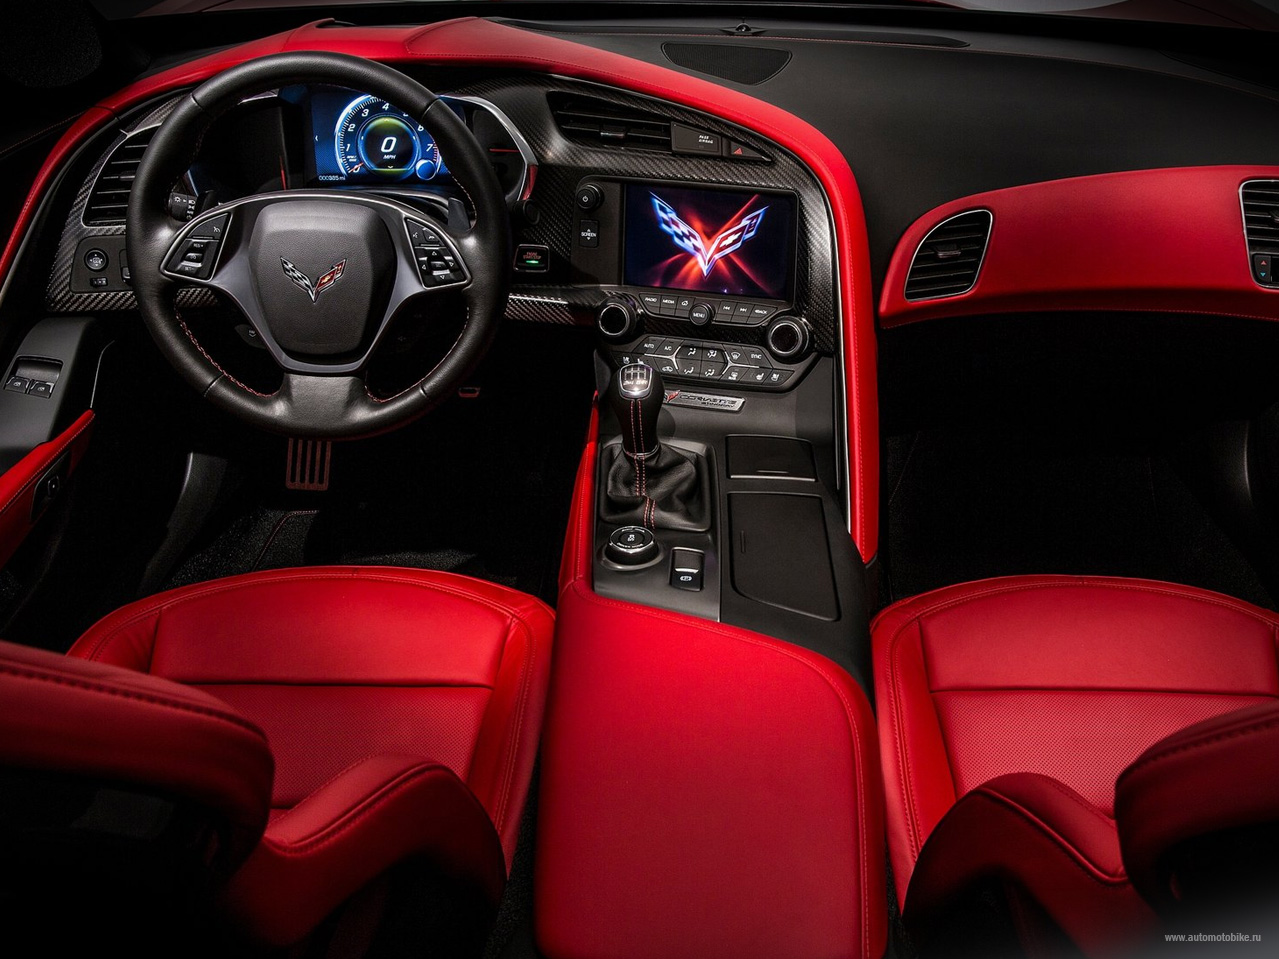 Chevrolet Corvette Stingray — истинно американская ценность